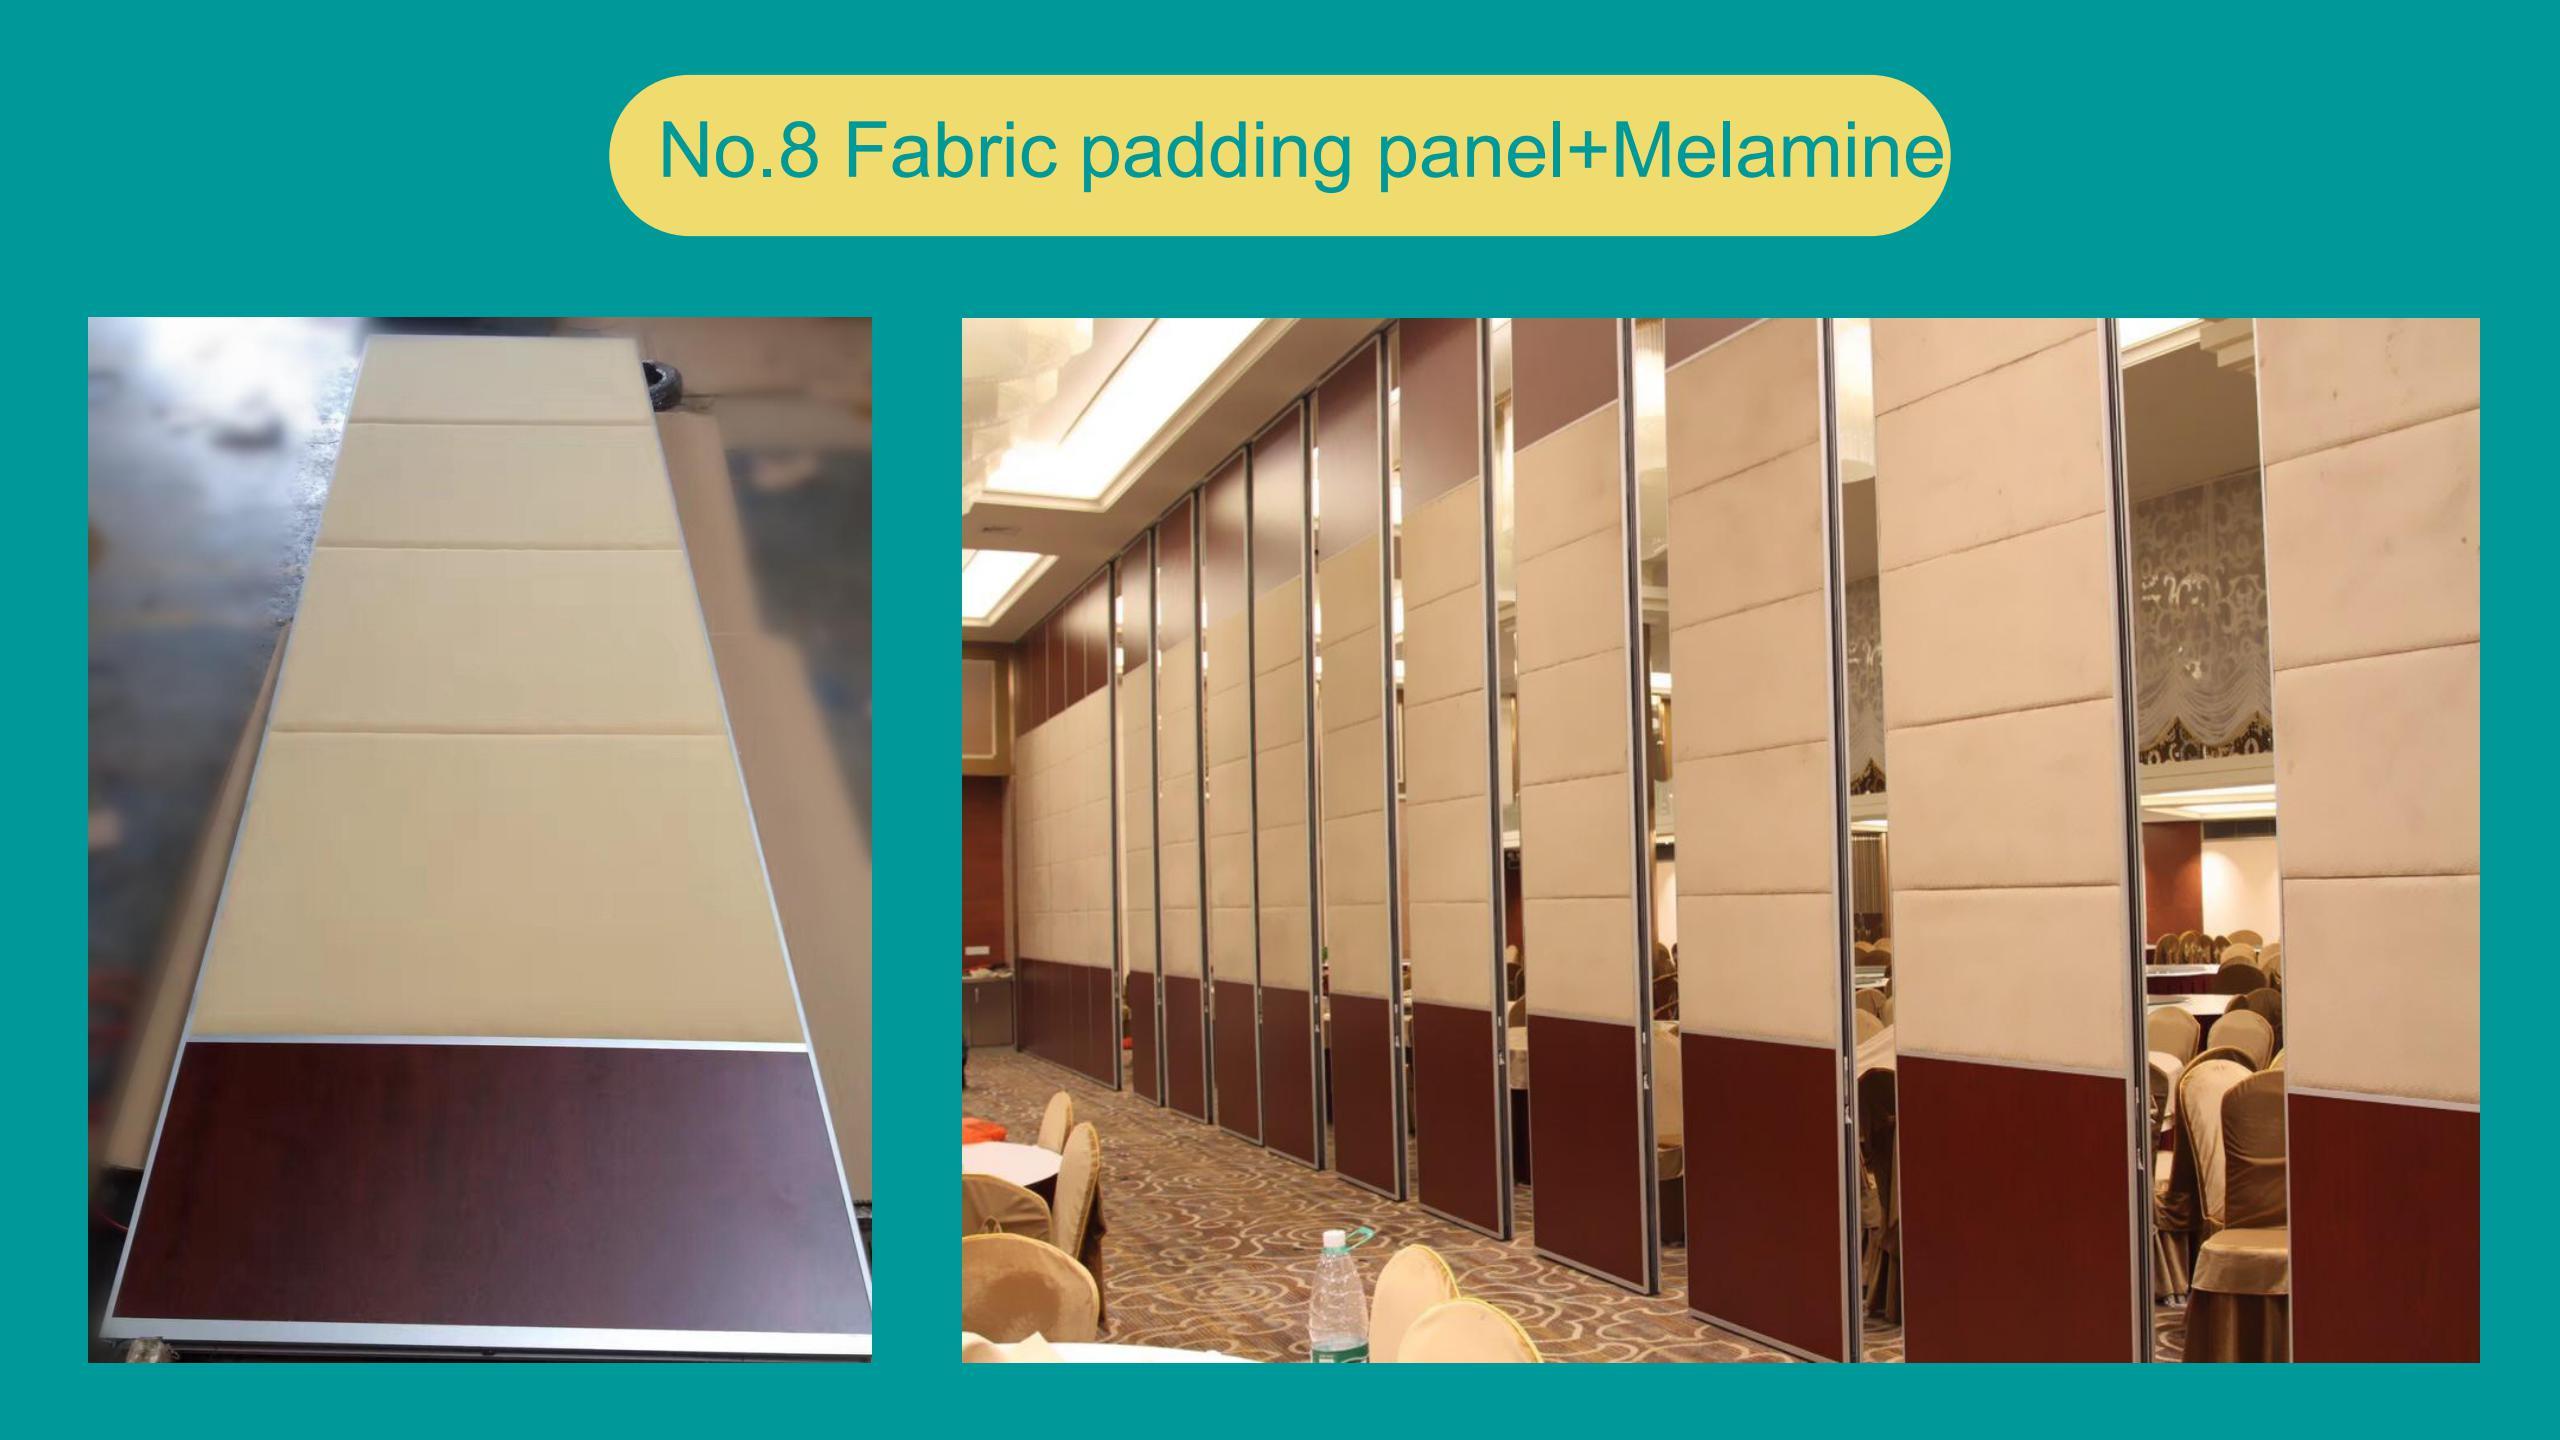 Fabric padding panel+Melamine